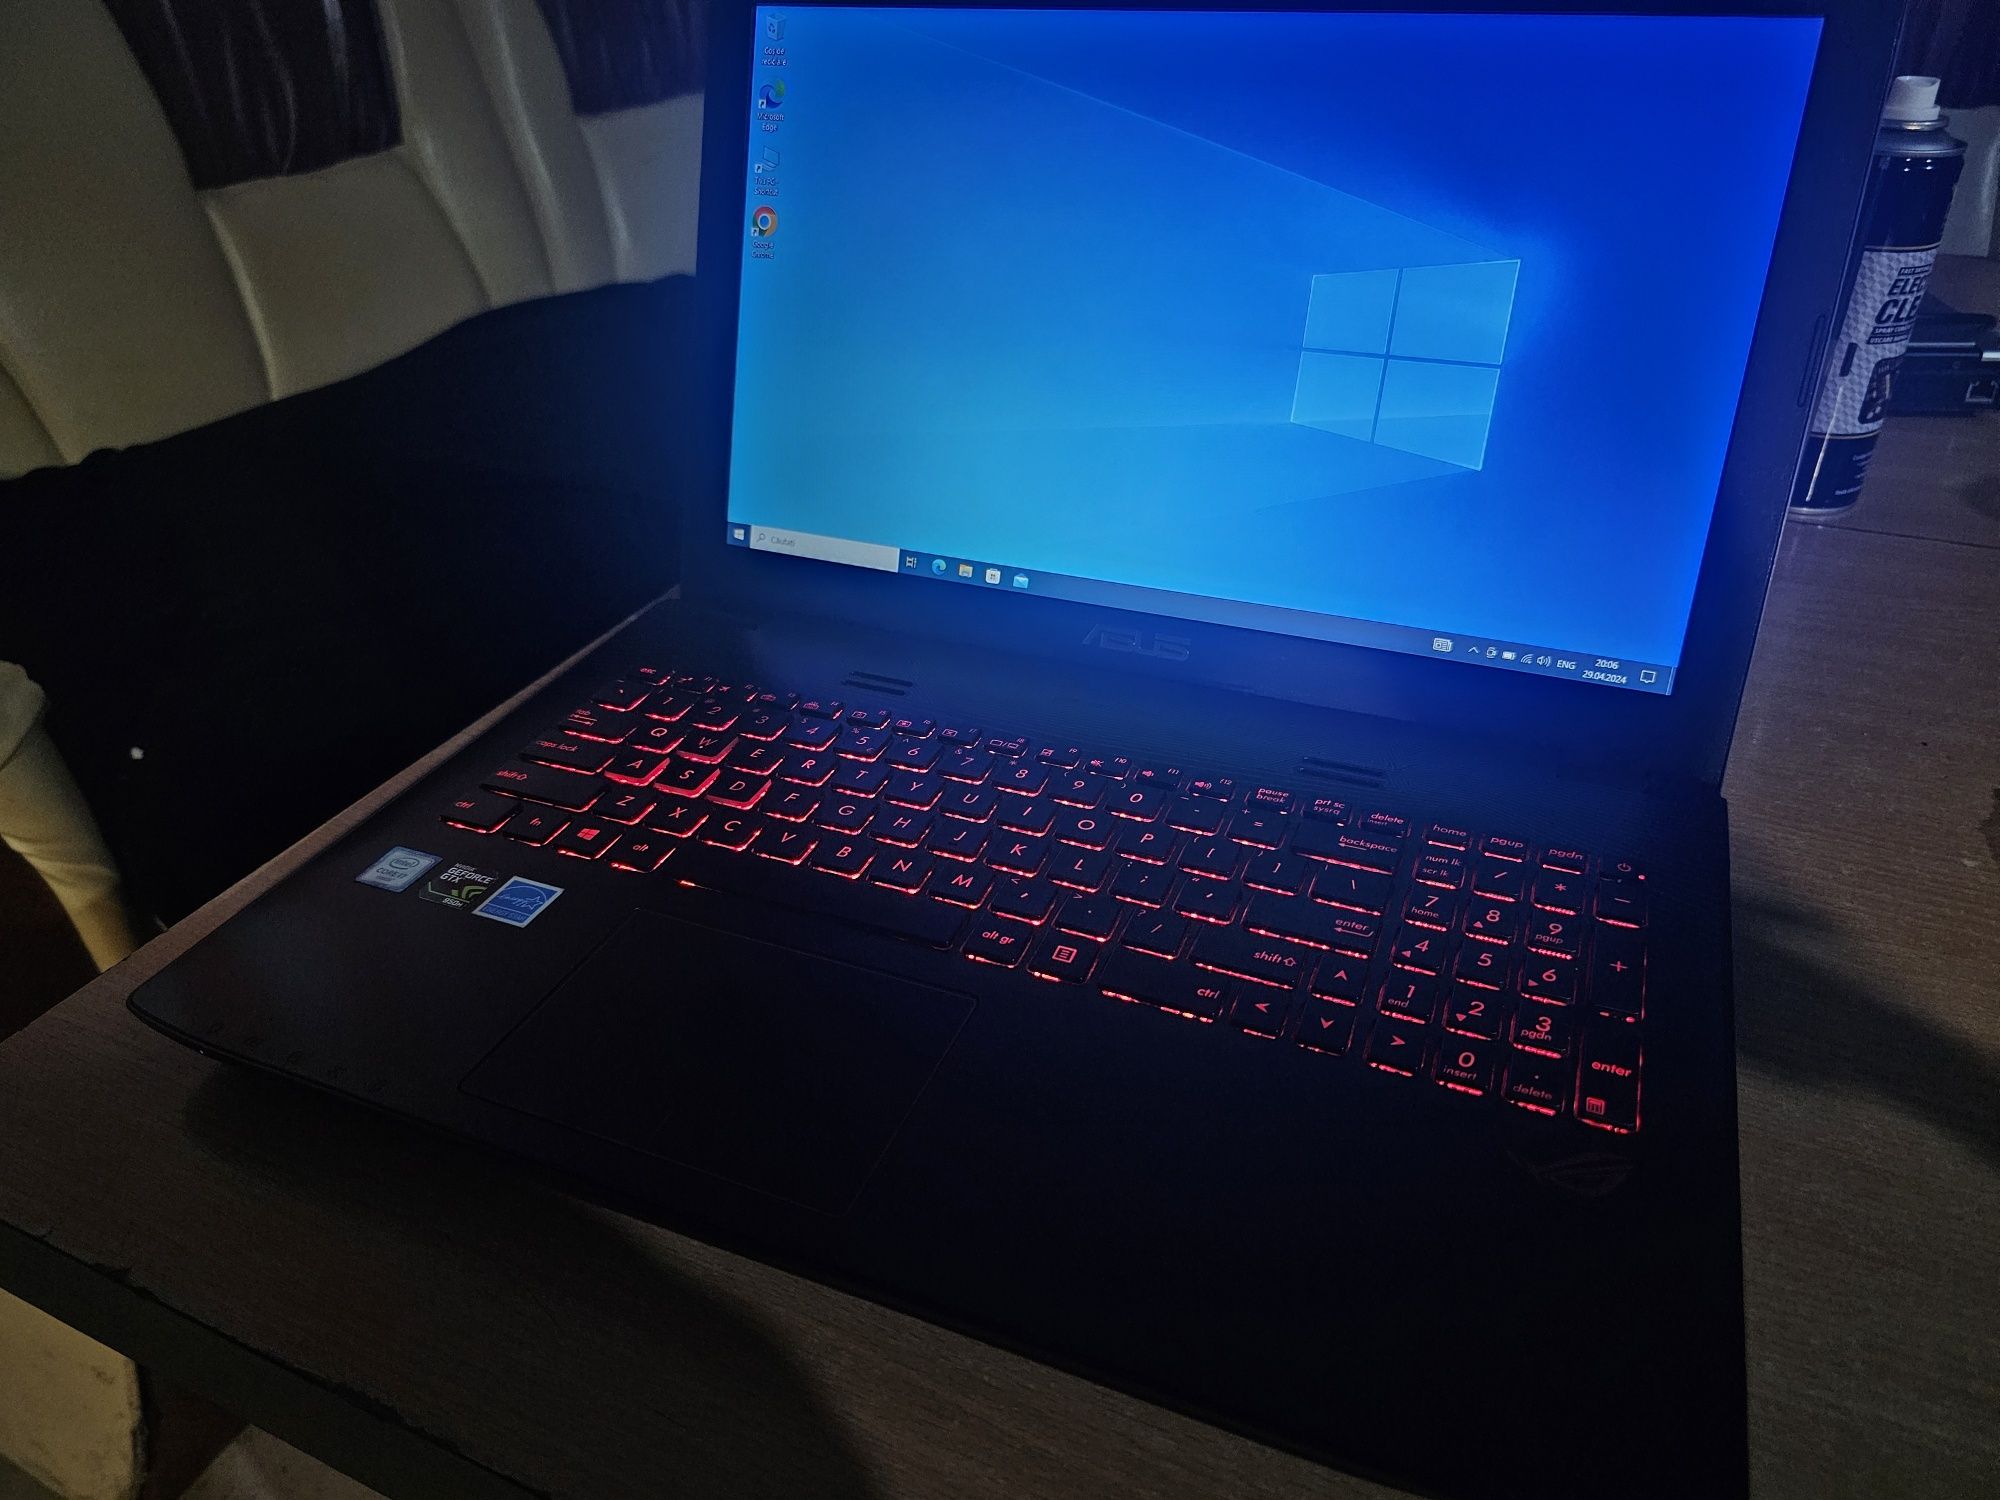 Laptop Asus rog gl552v gaming